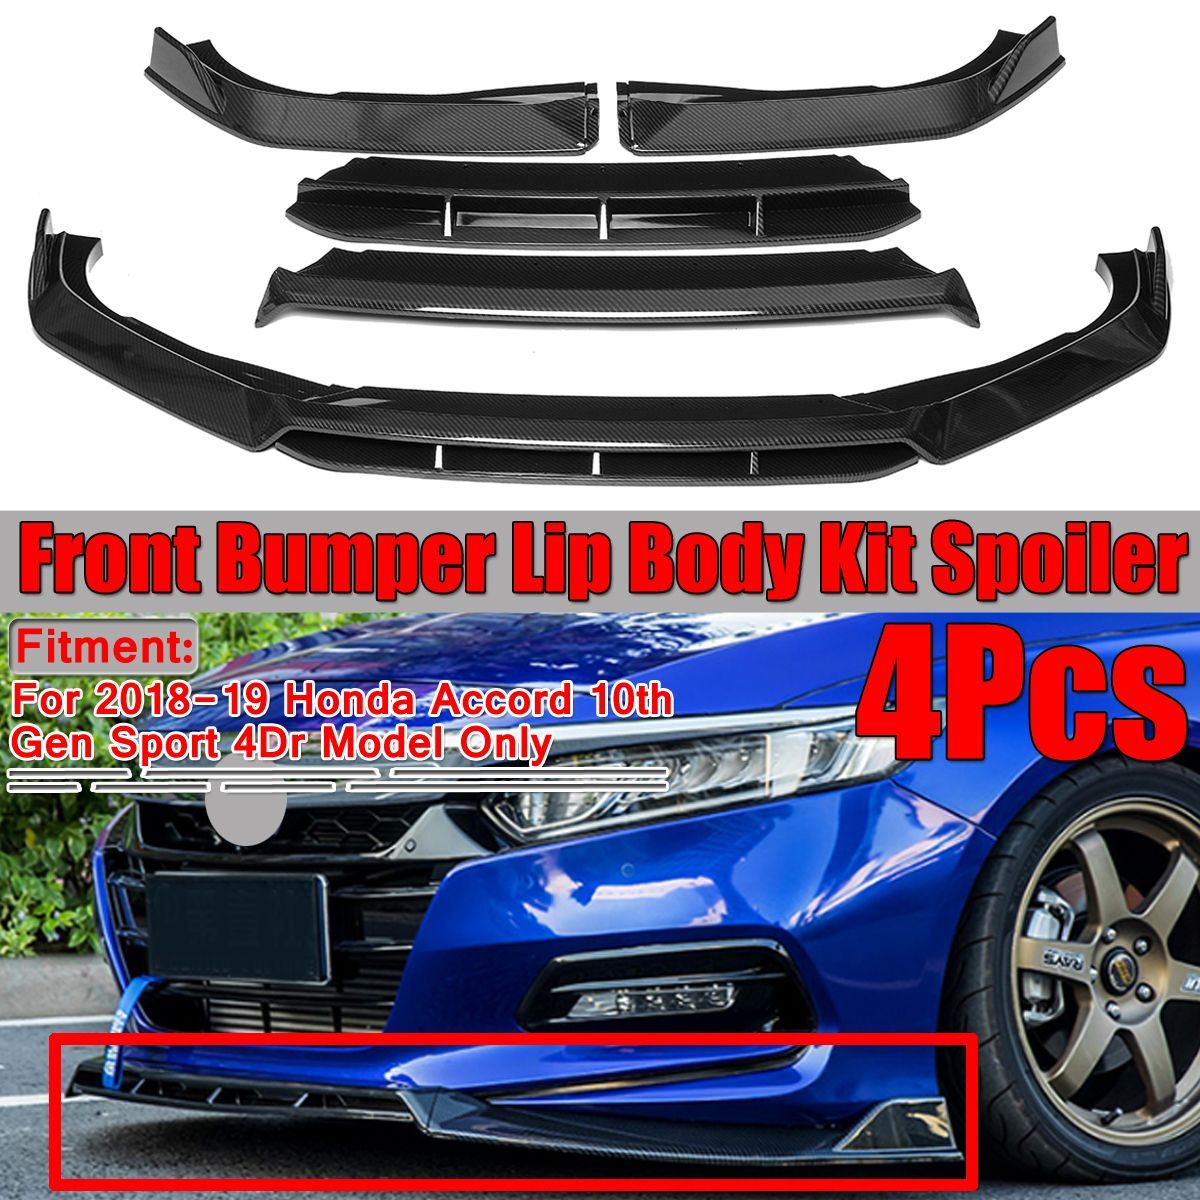 Front-Bumper-Lip-For-honda-2018-2019--Accord-10th-Gen-Sport-4-Piece-Designed-Strip-1546649